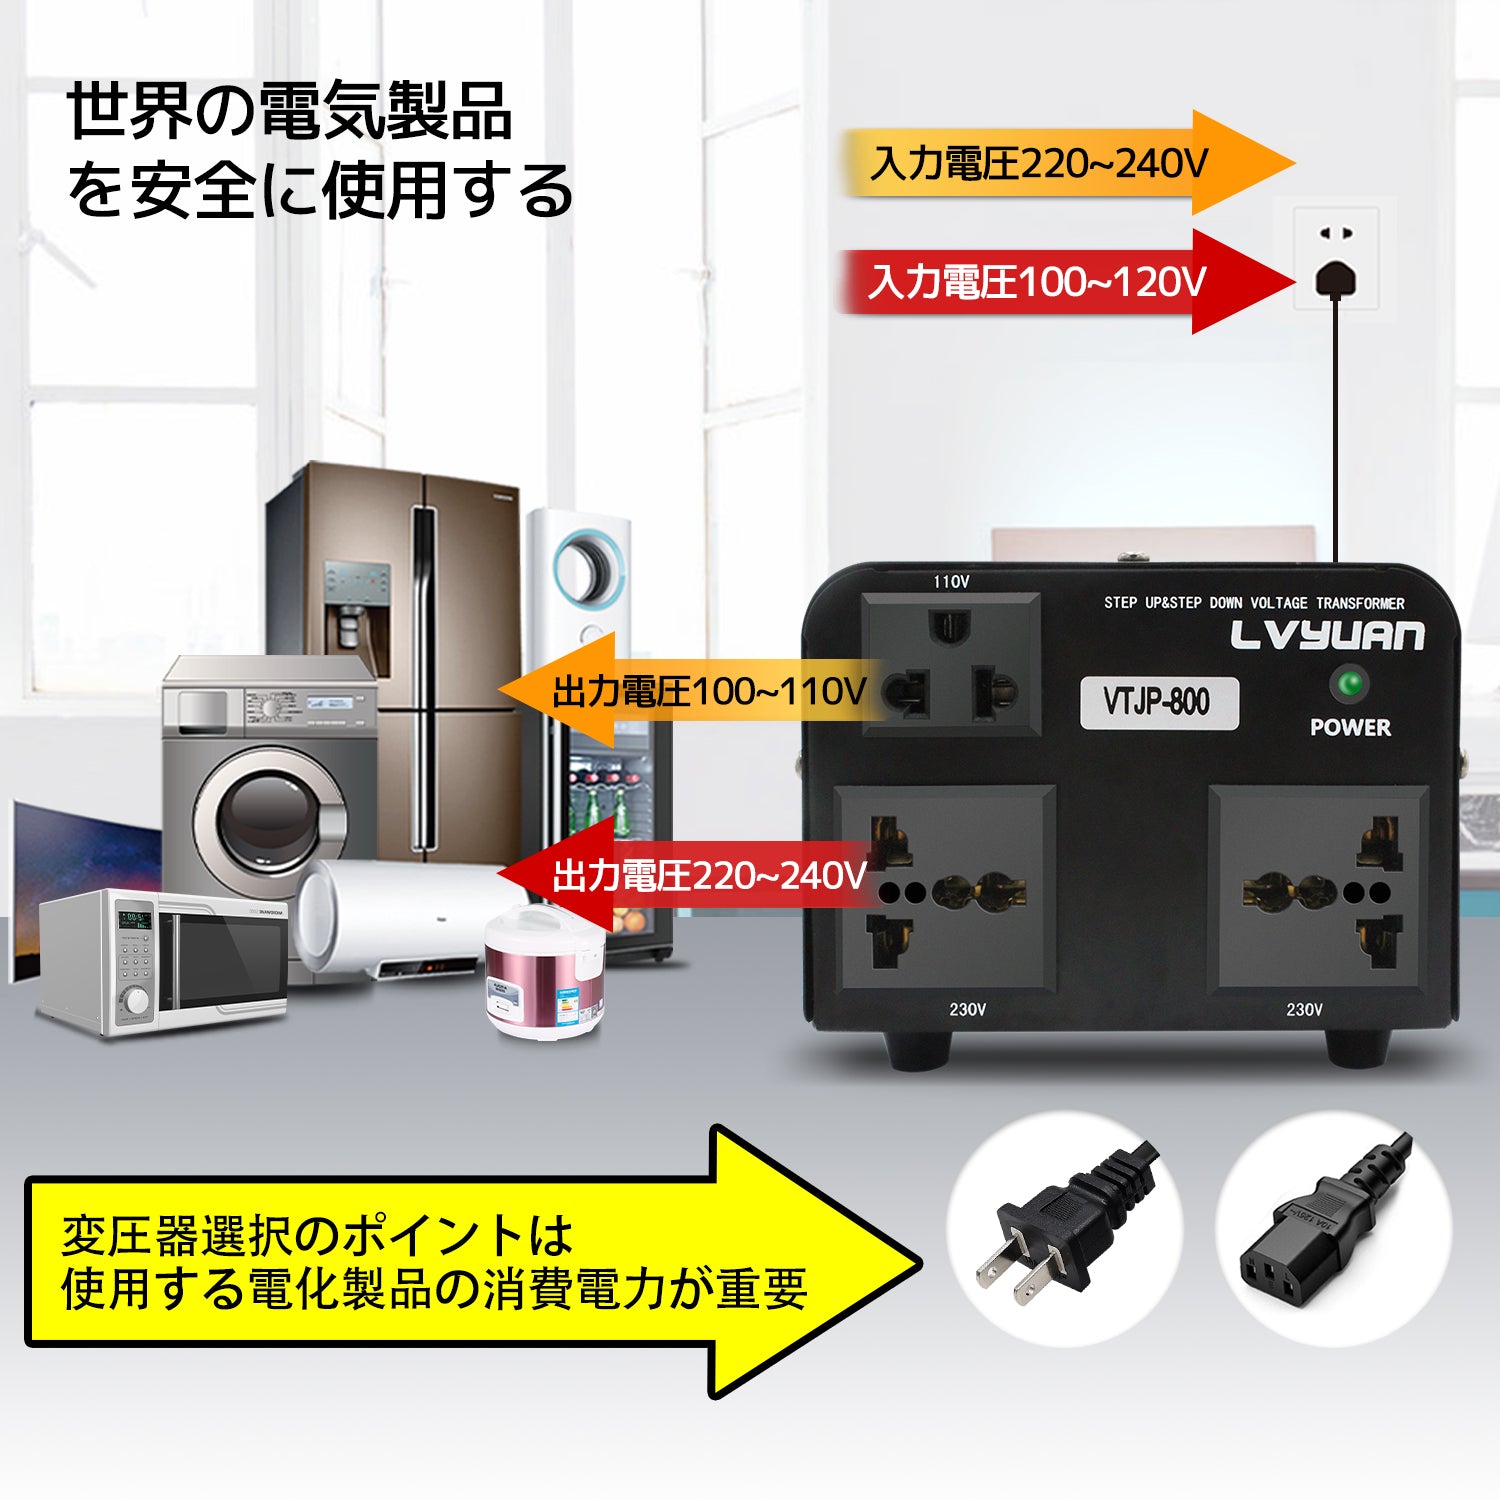 LVYUAN 海外国内両用型変圧器 800W 降圧・昇圧 AC100V ~ 110V⇄220V